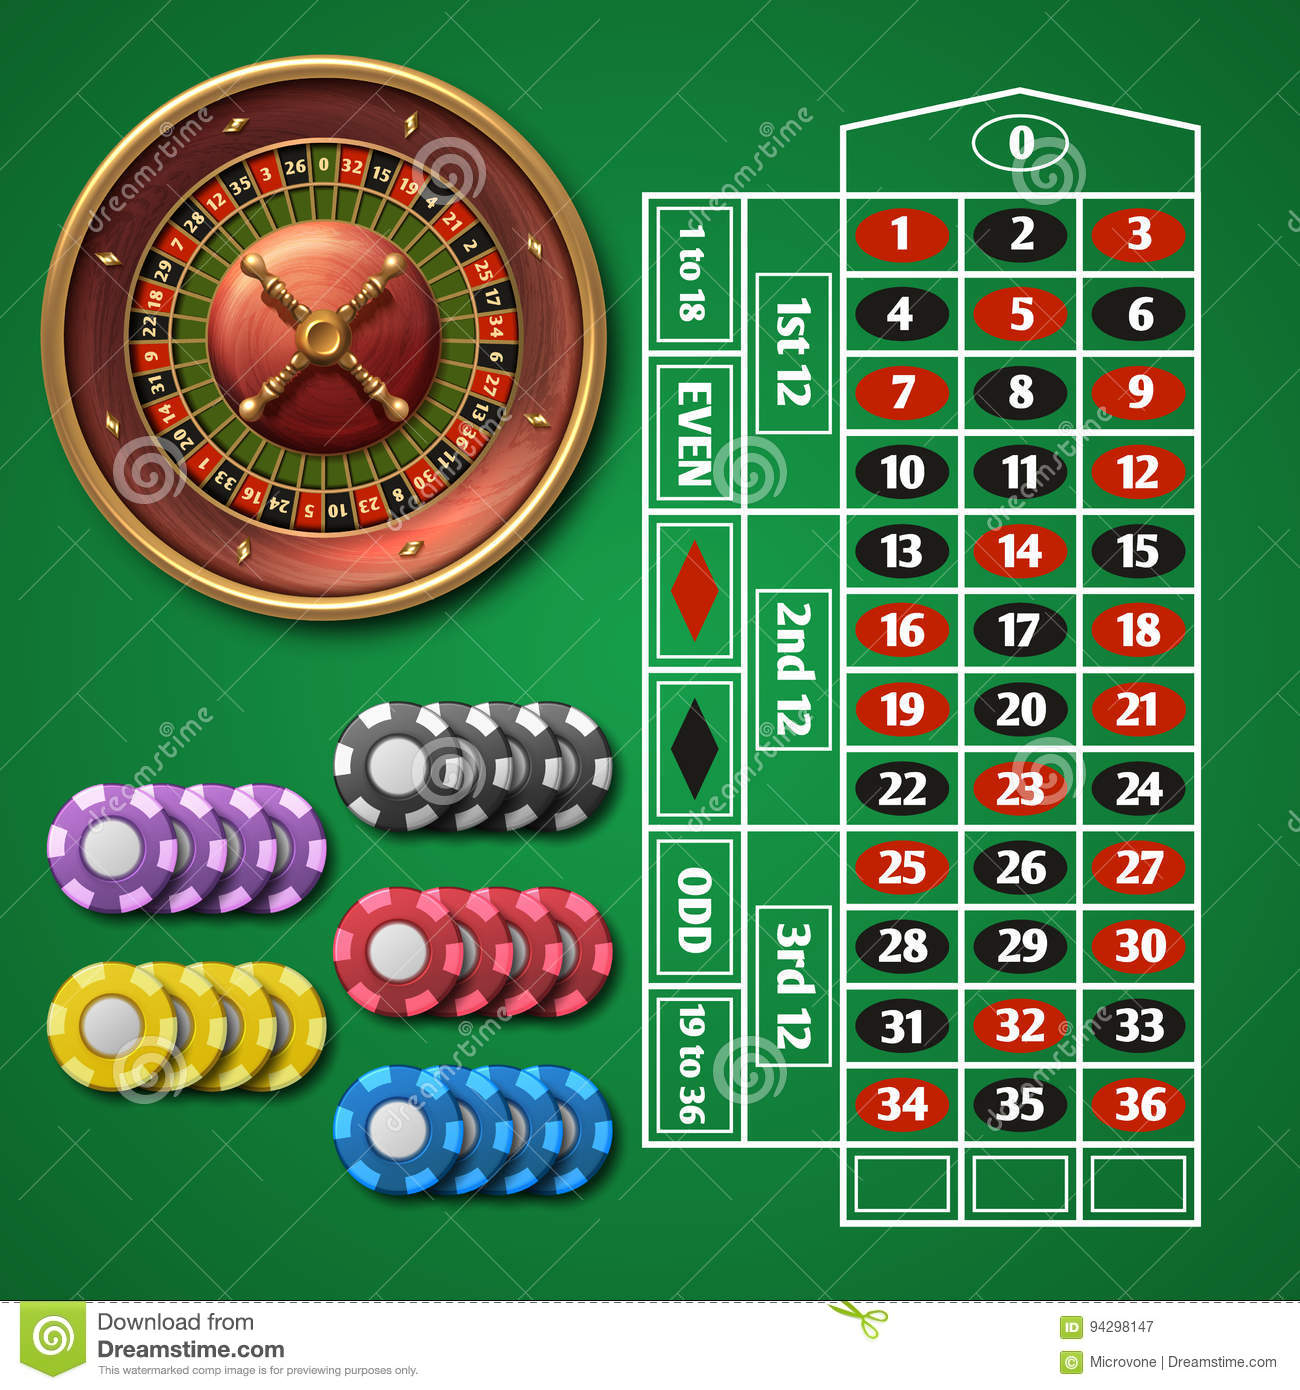 Casino bonus telegram